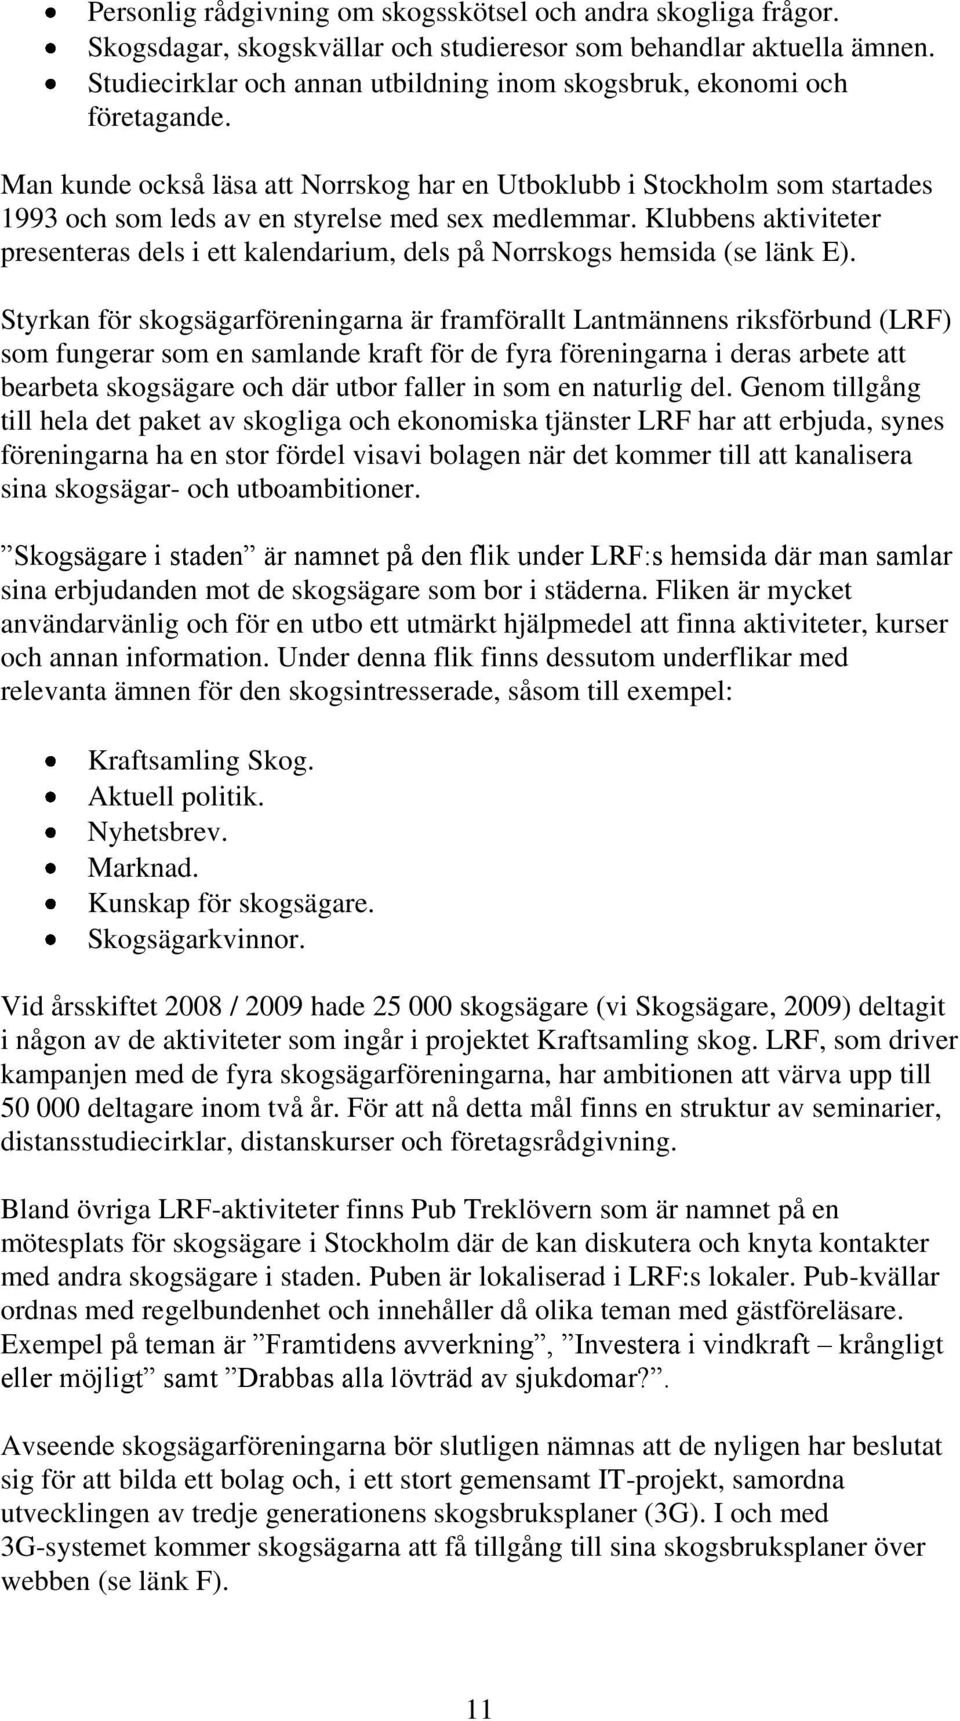 Man kunde också läsa att Norrskog har en Utboklubb i Stockholm som startades 1993 och som leds av en styrelse med sex medlemmar.